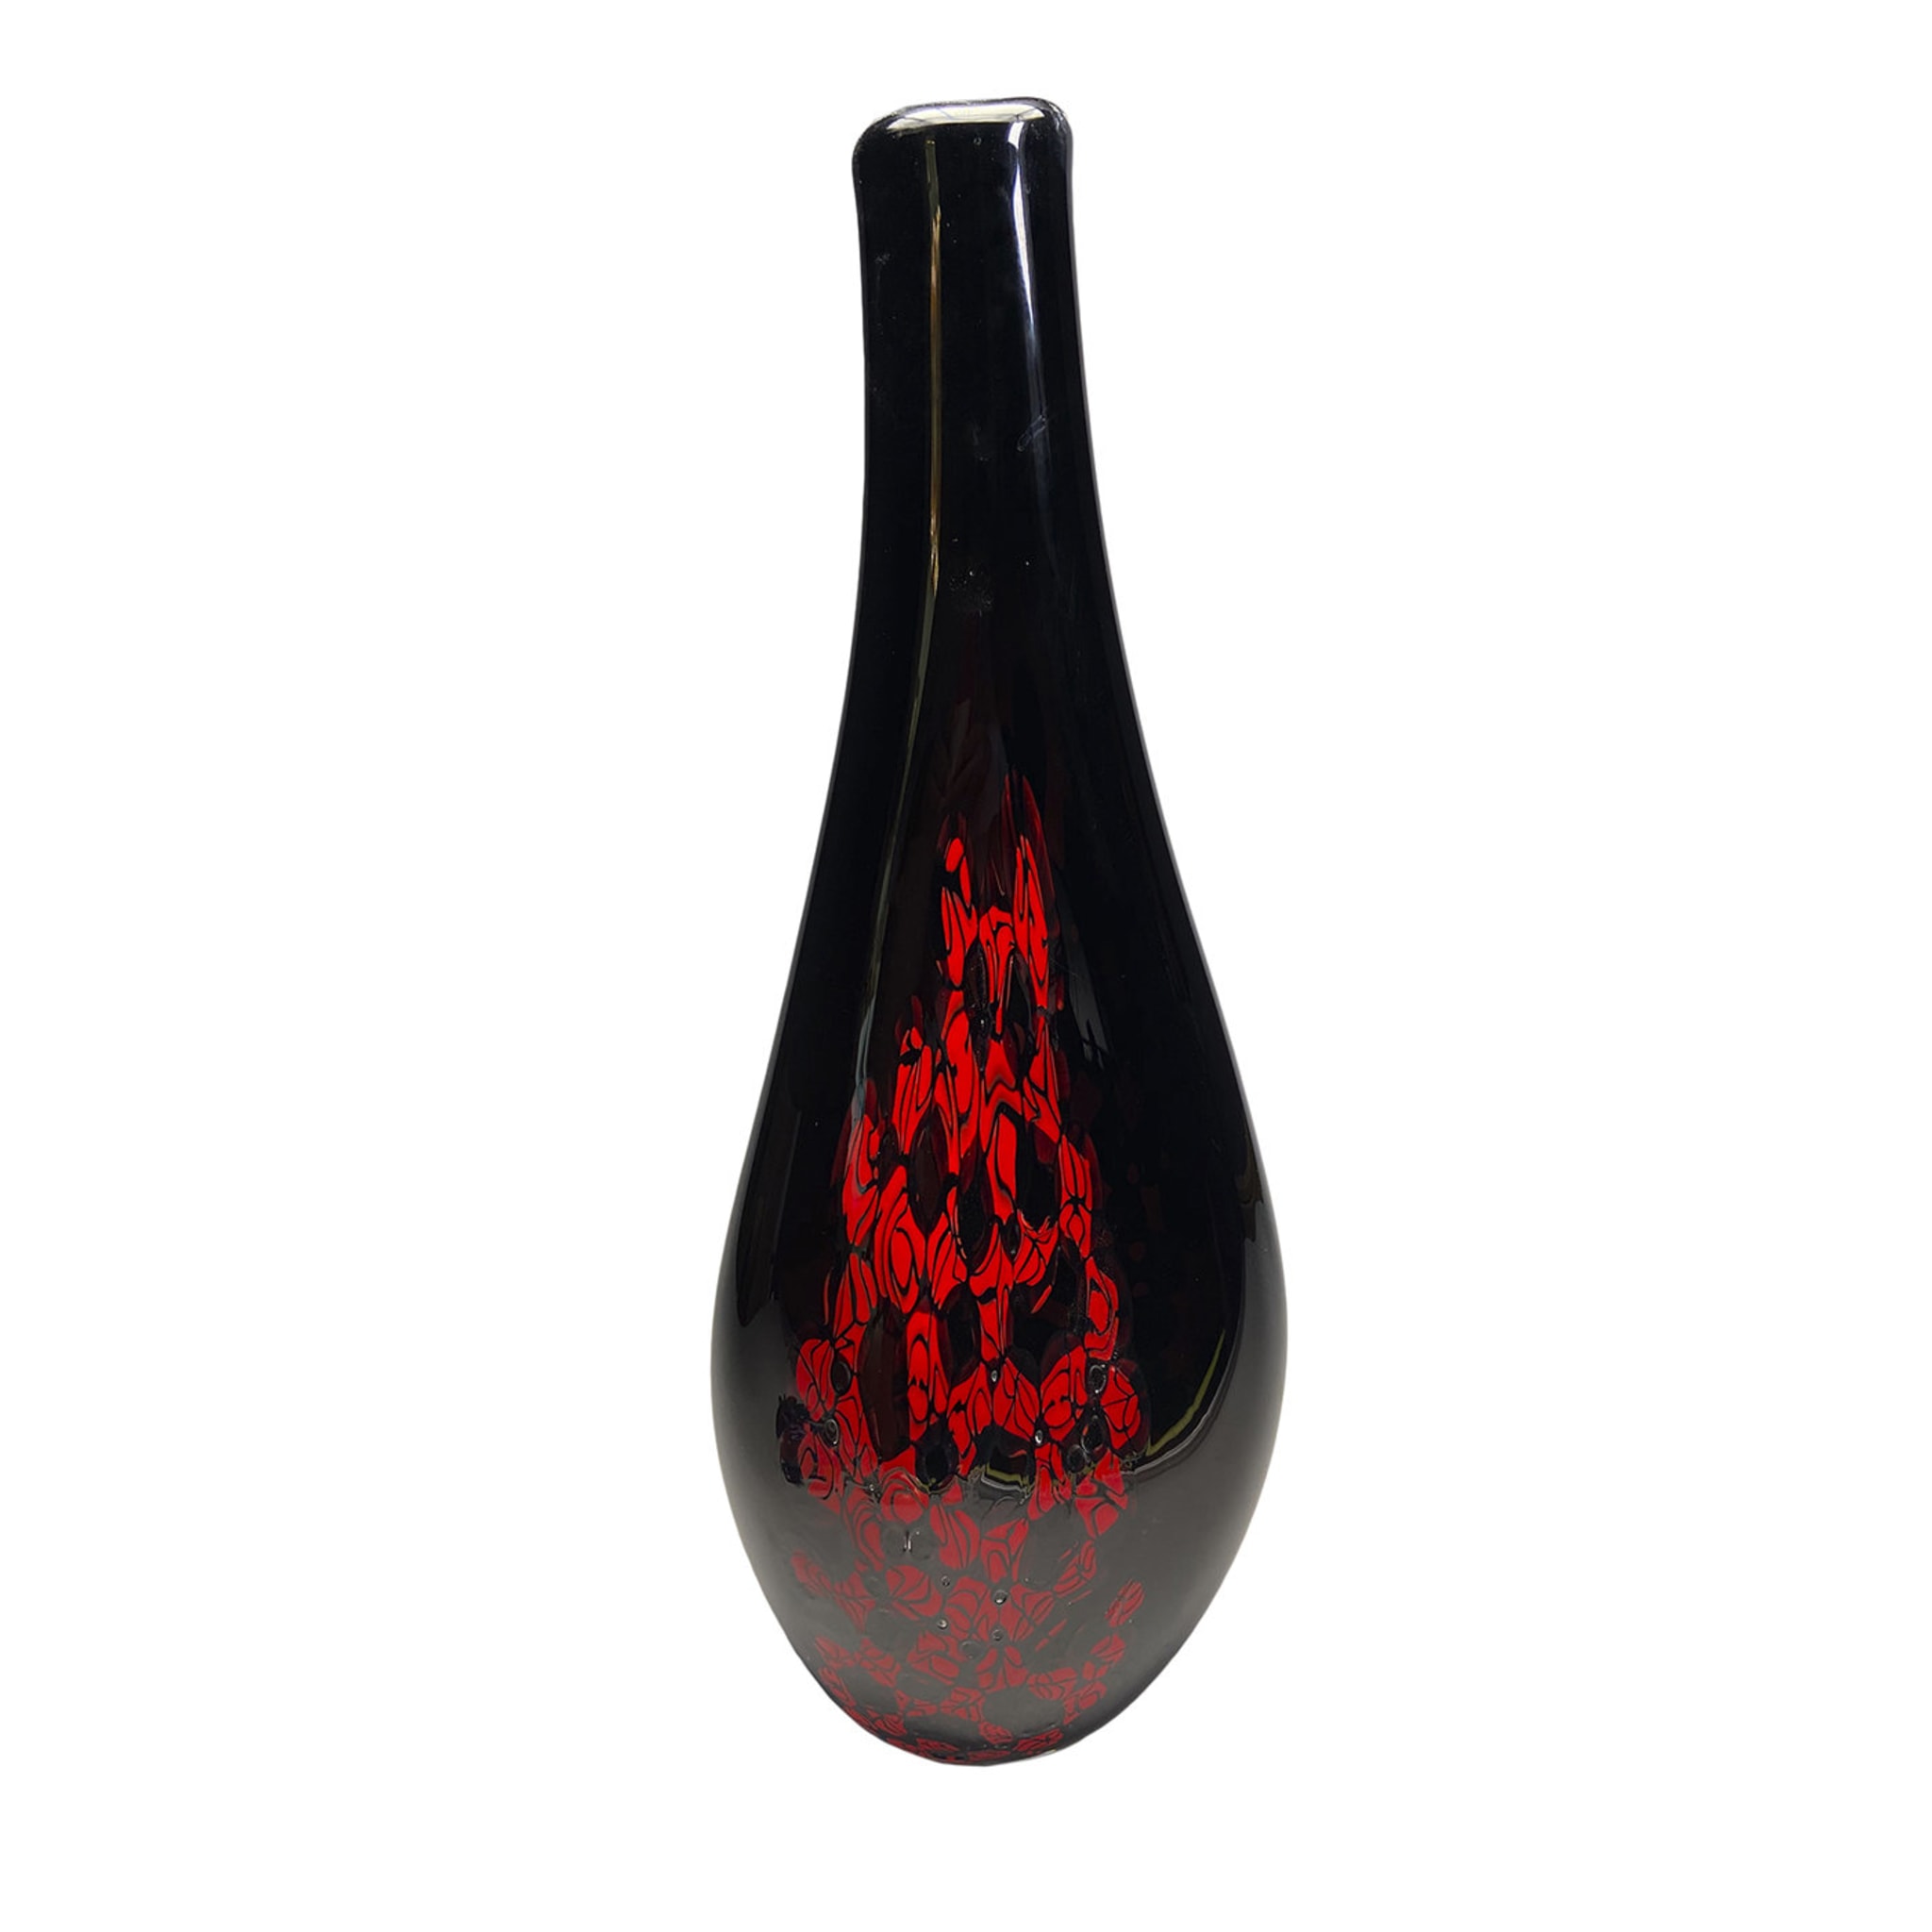 Trippa Black and Red Murrine Vase - Main view